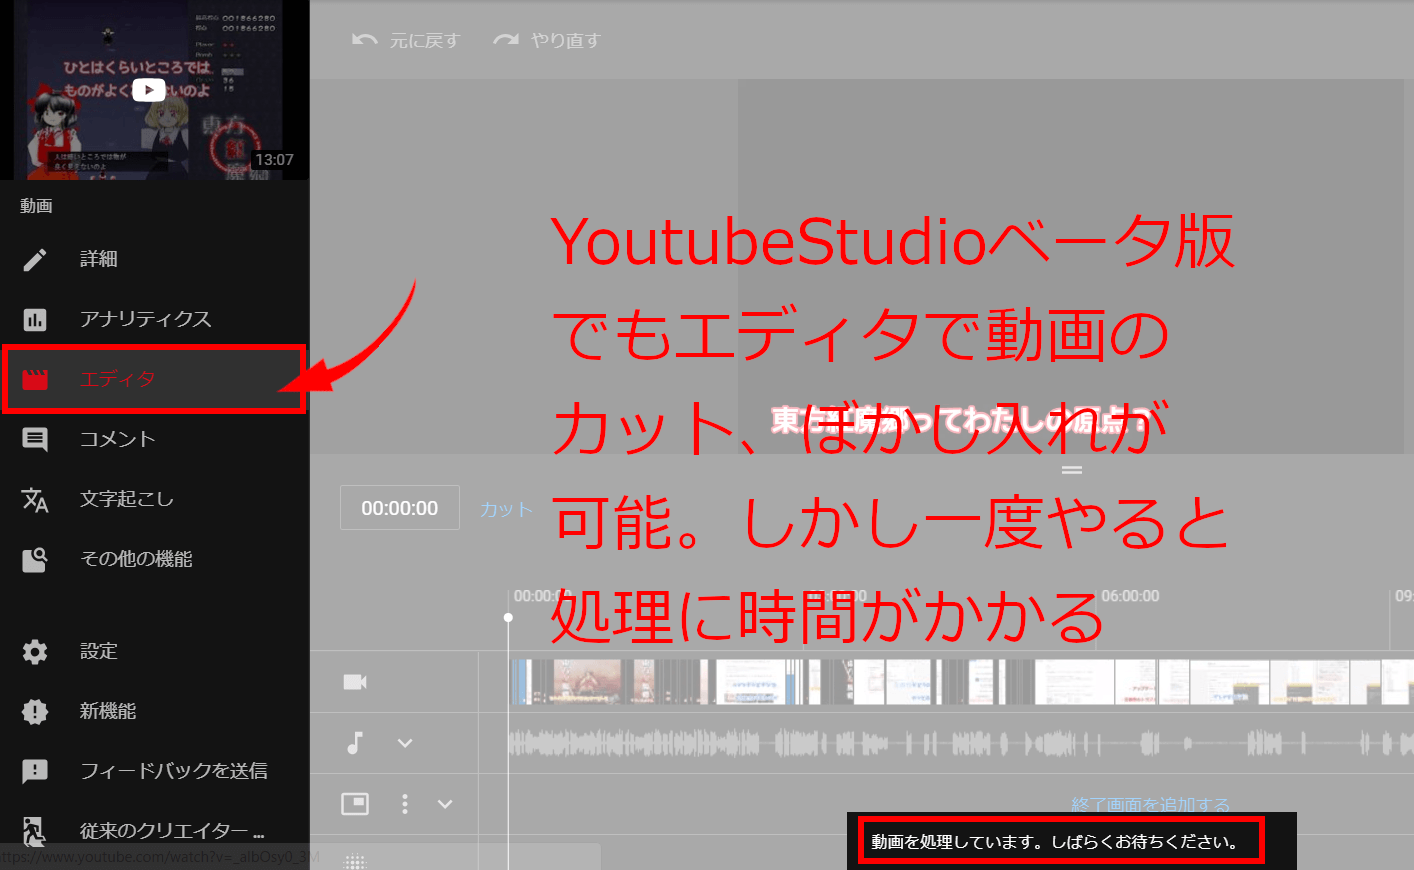 youtube studio beta 動画エディター